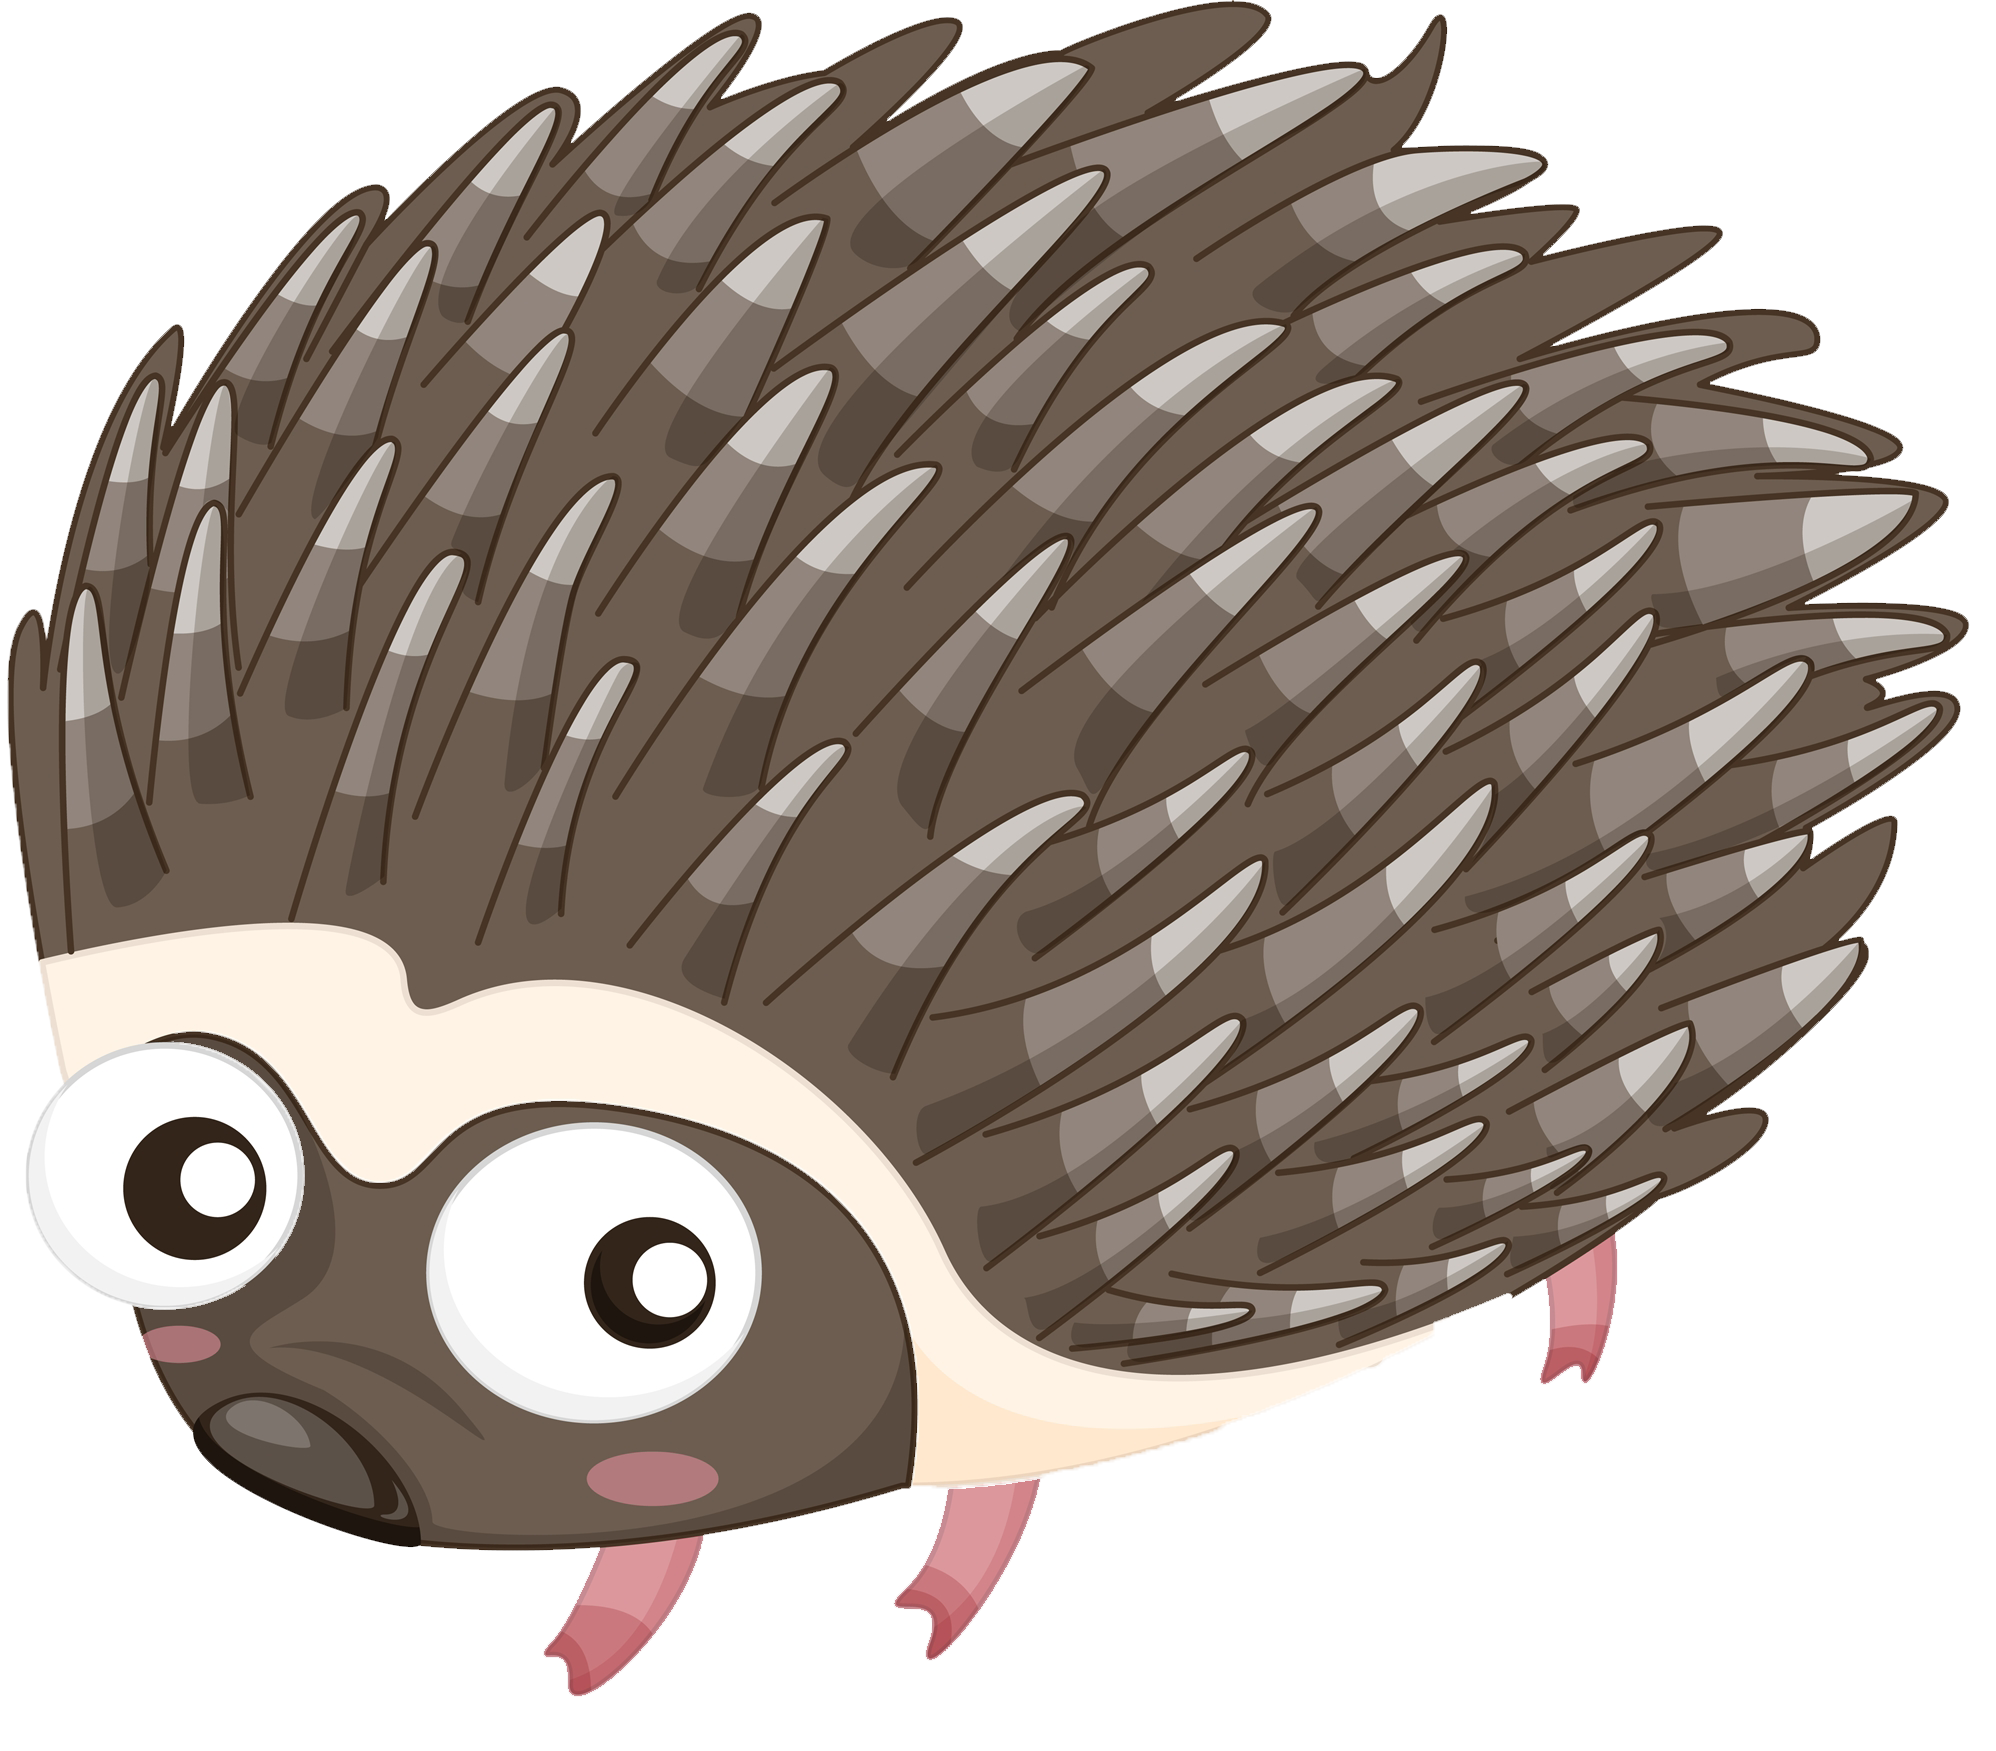 Hedgehog clipart porcupine, Hedgehog porcupine Transparent FREE for